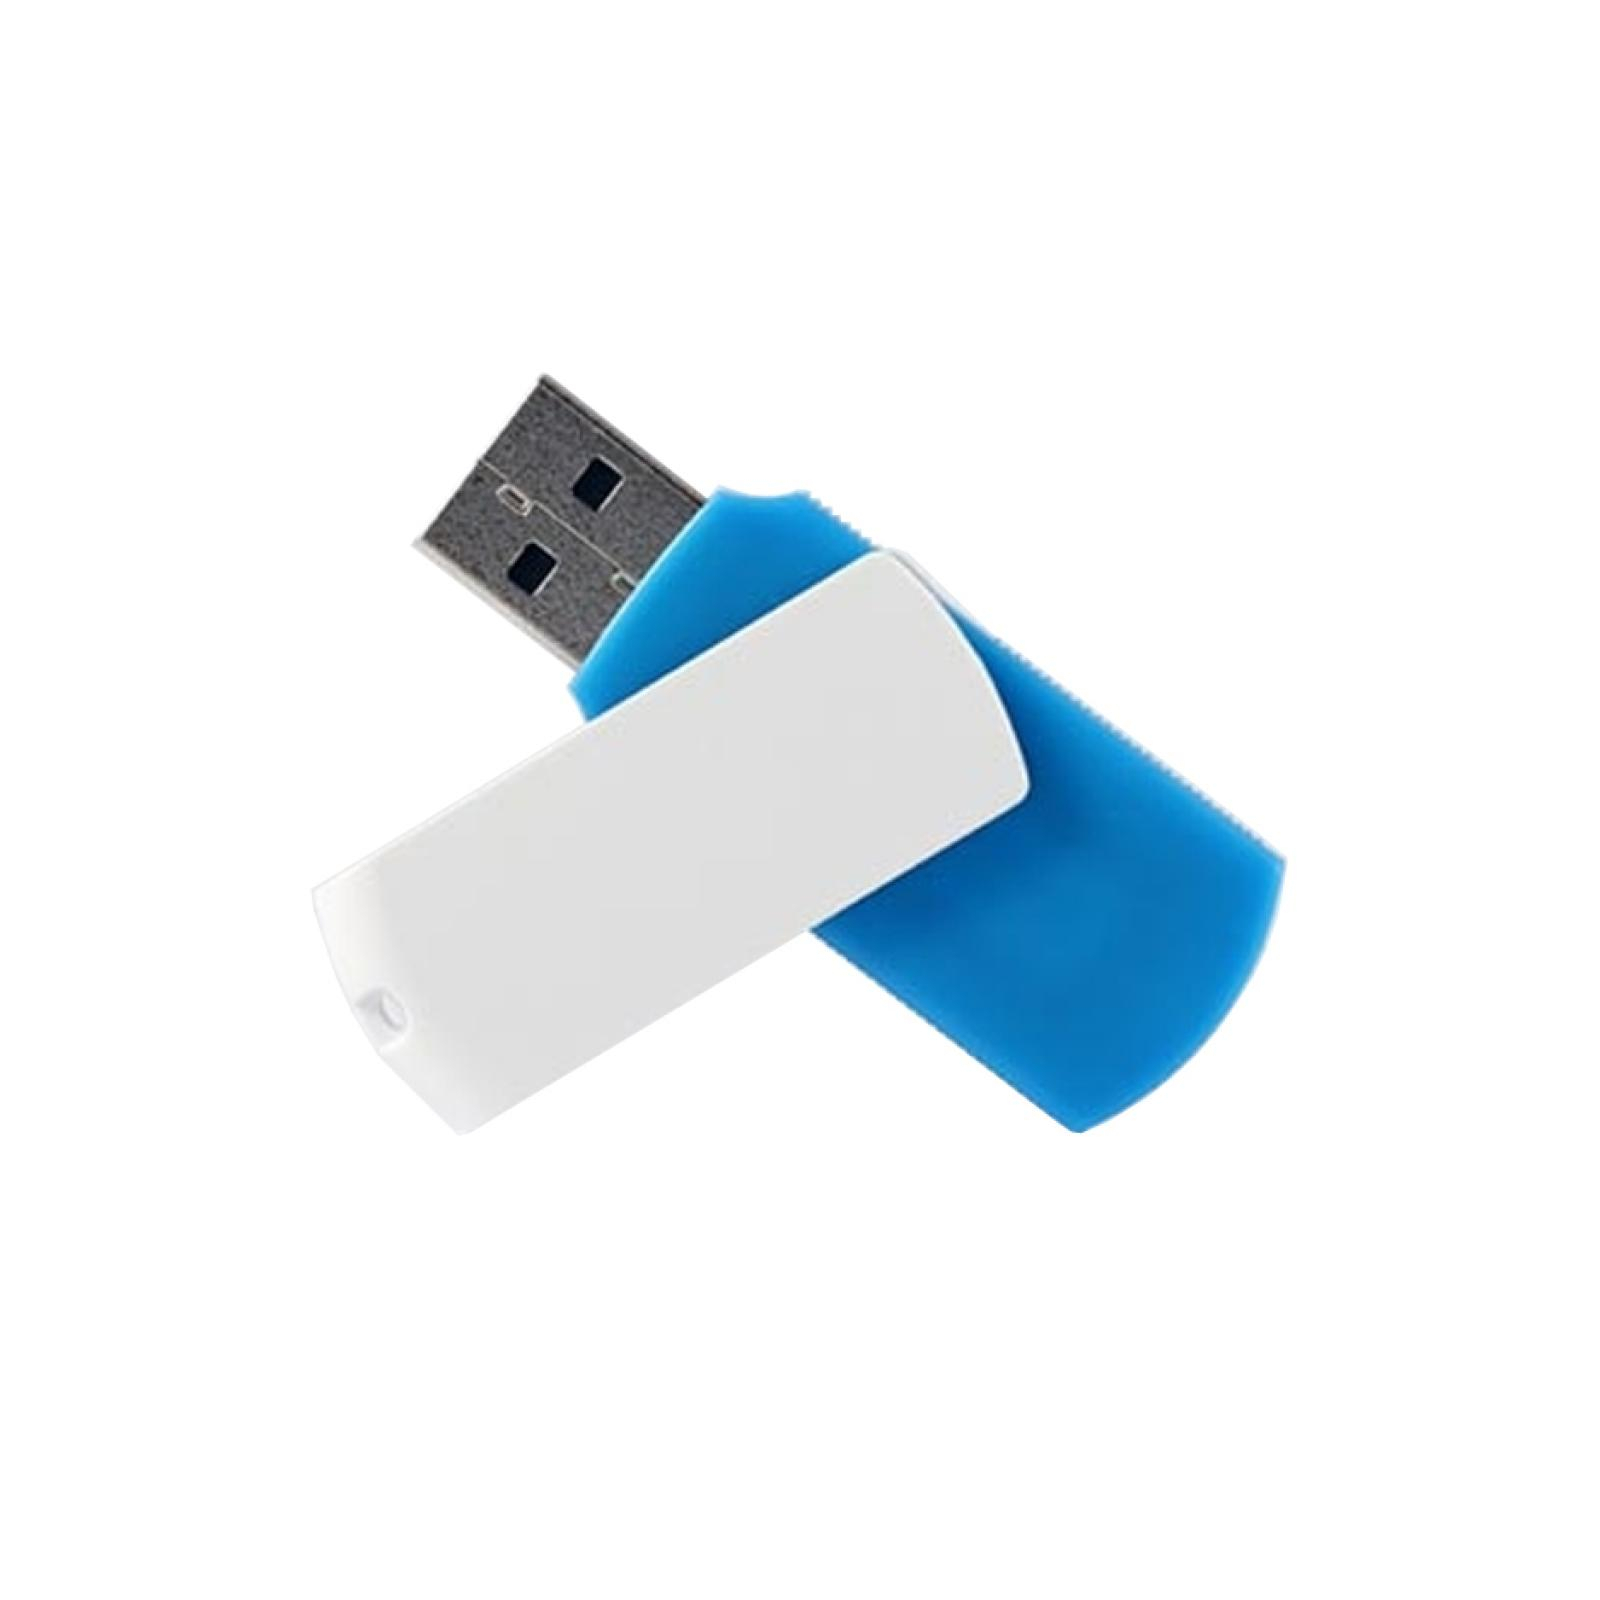 USB флеш накопитель Goodram 16GB Colour Mix Blue/White USB 2.0 (UCO2-0160MXR11) изображение 2